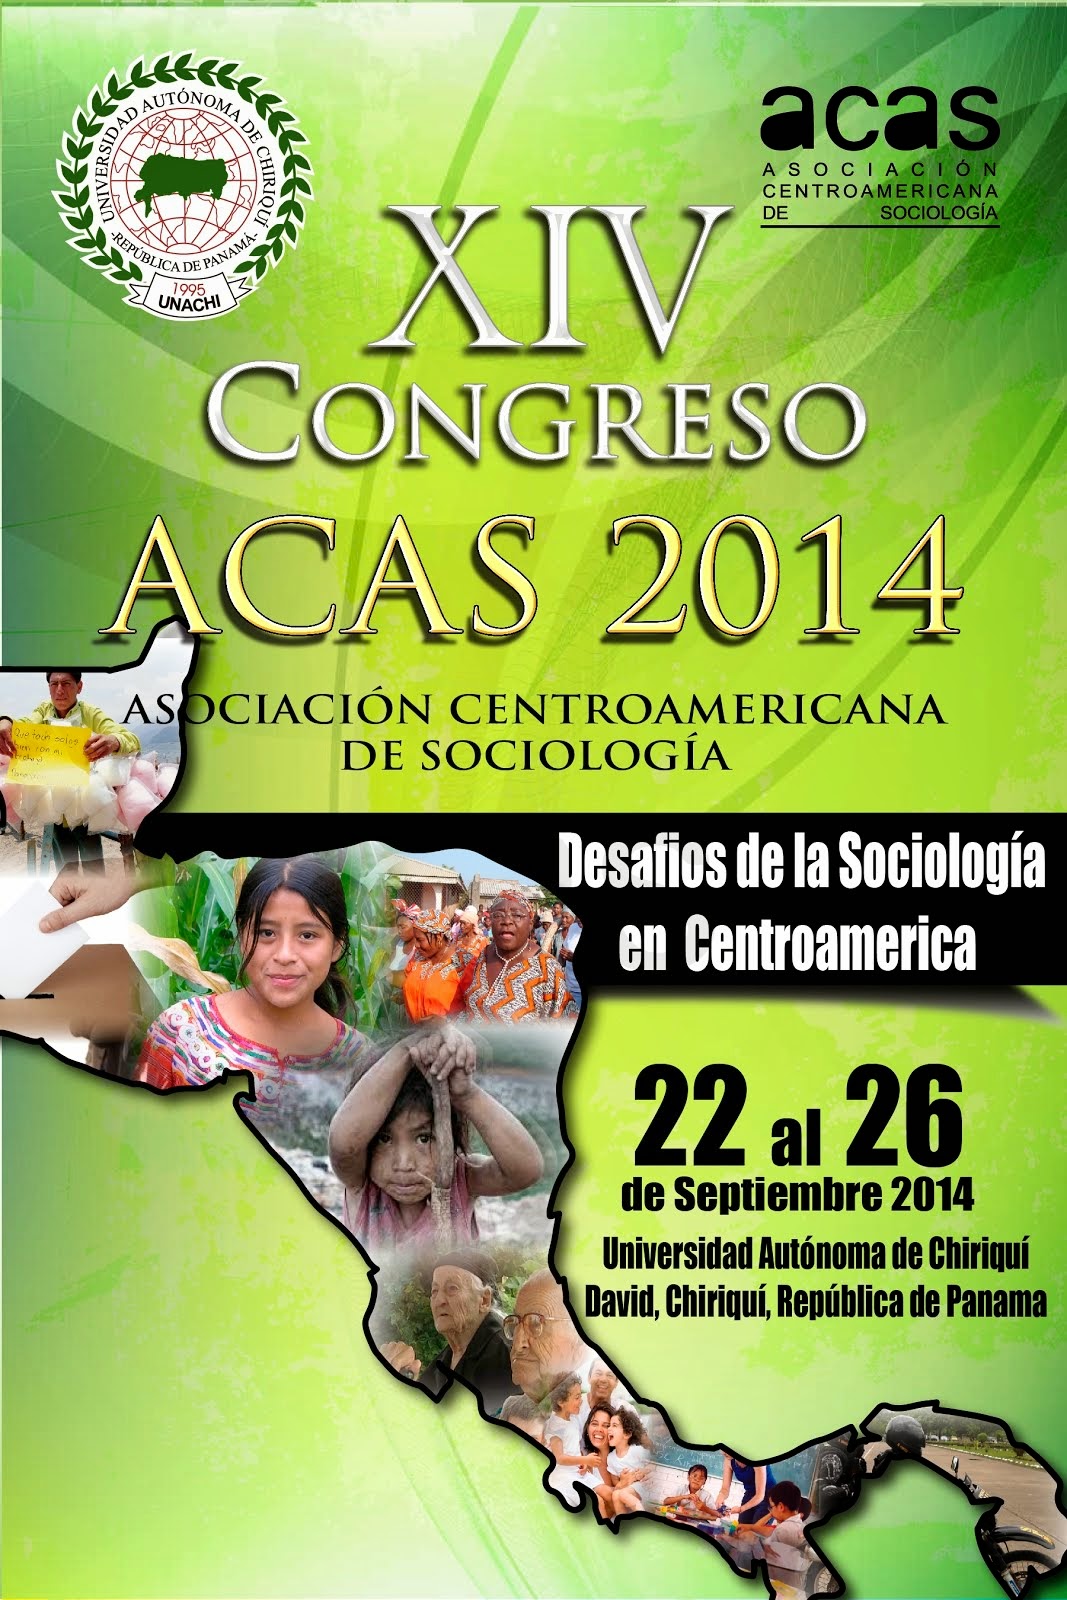 XIV Congreso Centroamericano de Sociología, David, Chiriquí, Panamá, septiembre de 2014.